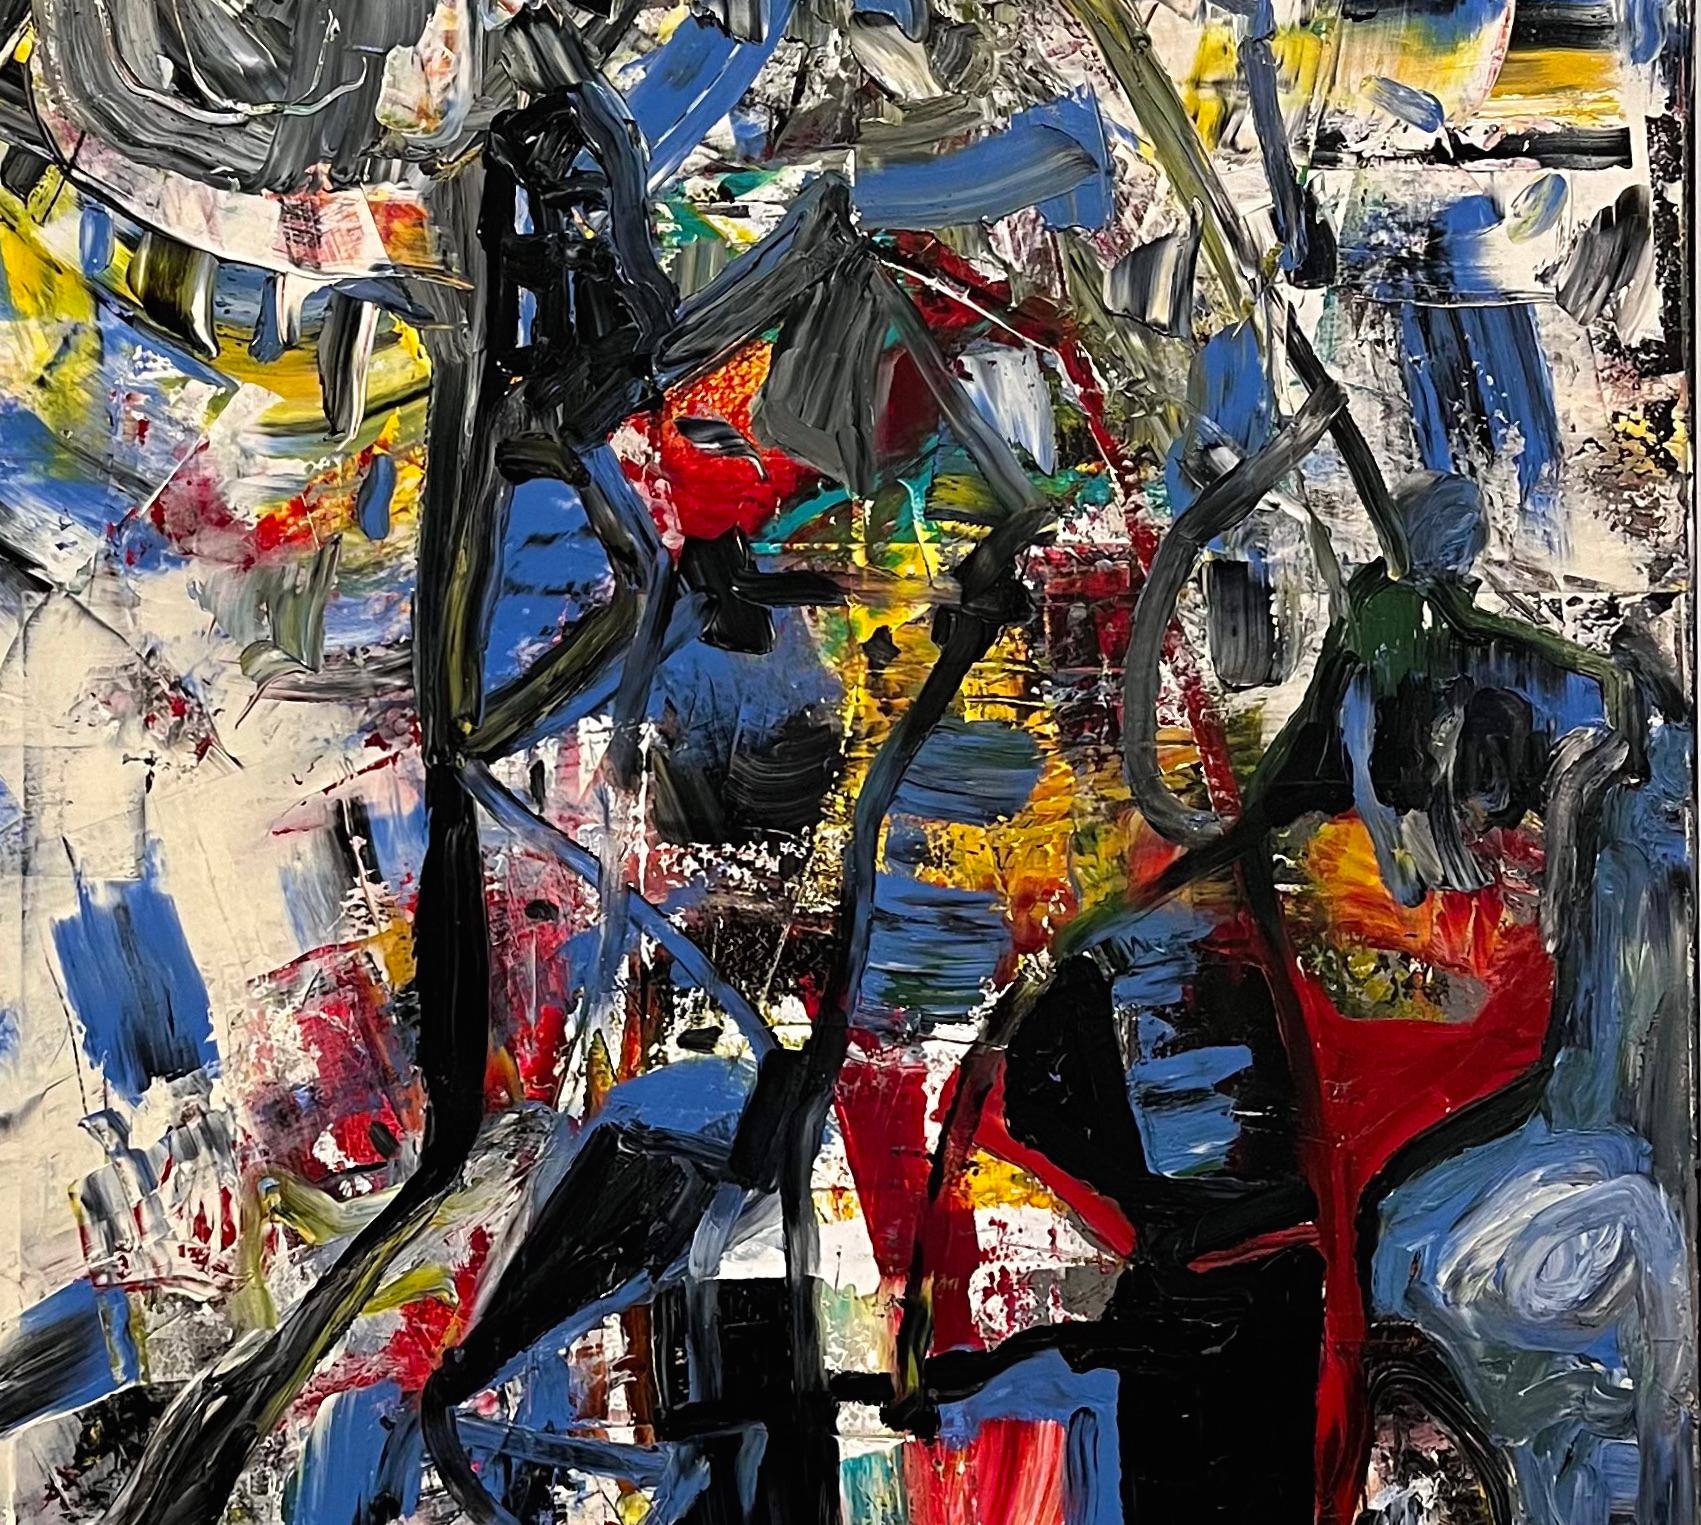 Dieses abstrakte Ölgemälde des verstorbenen Künstlers Dick Wray aus Houston drückt eine beeindruckende kinetische Energie aus. Die dicken Farbschichten sorgen für eine bemerkenswerte Taktilität, die man bei Dick Wrays Kunstwerken häufig findet. Die